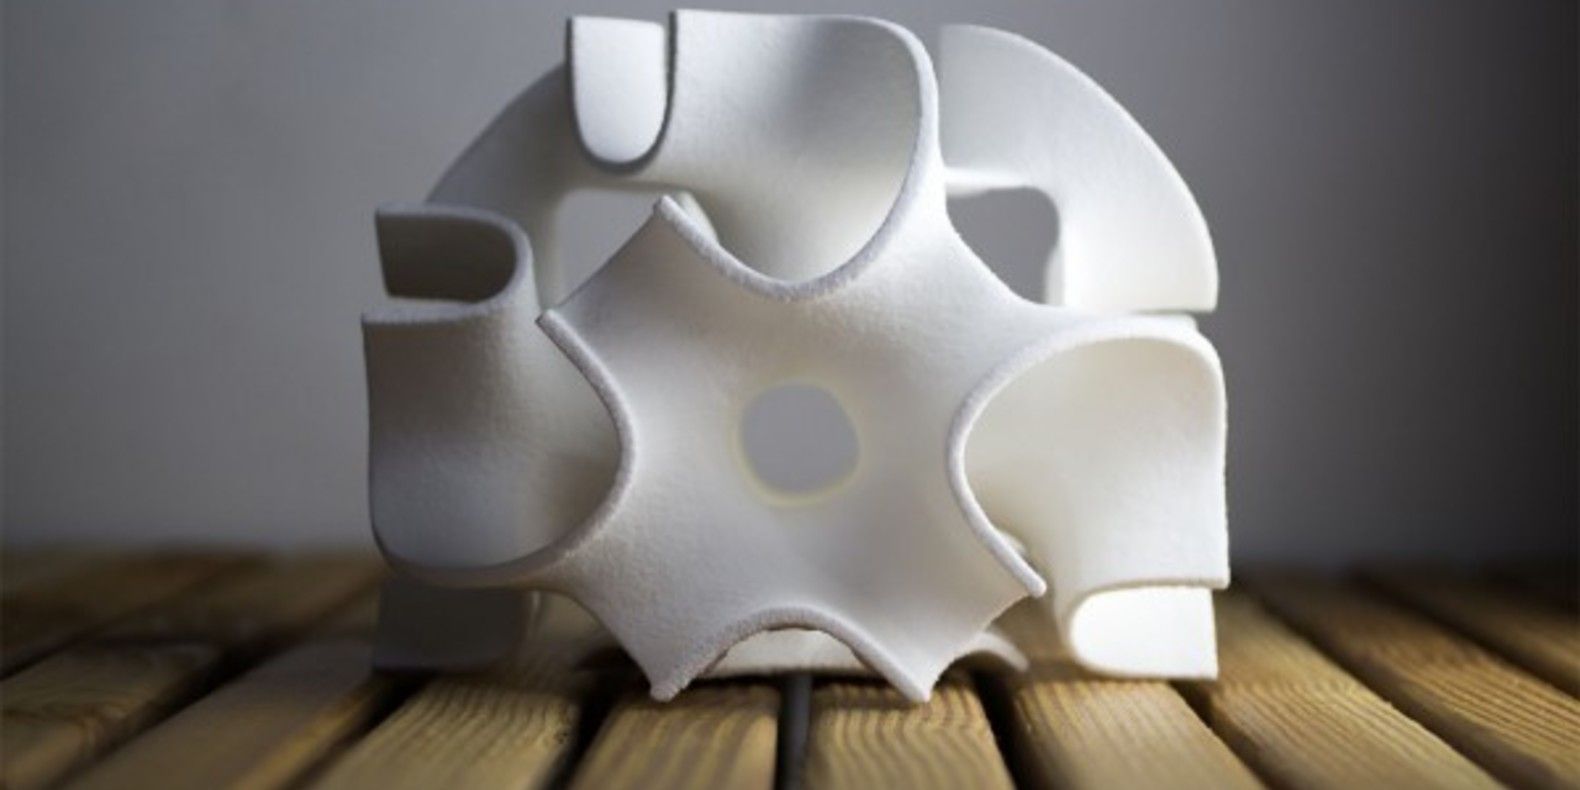 Сахарные скульптуры, созданные с помощью 3D-печати